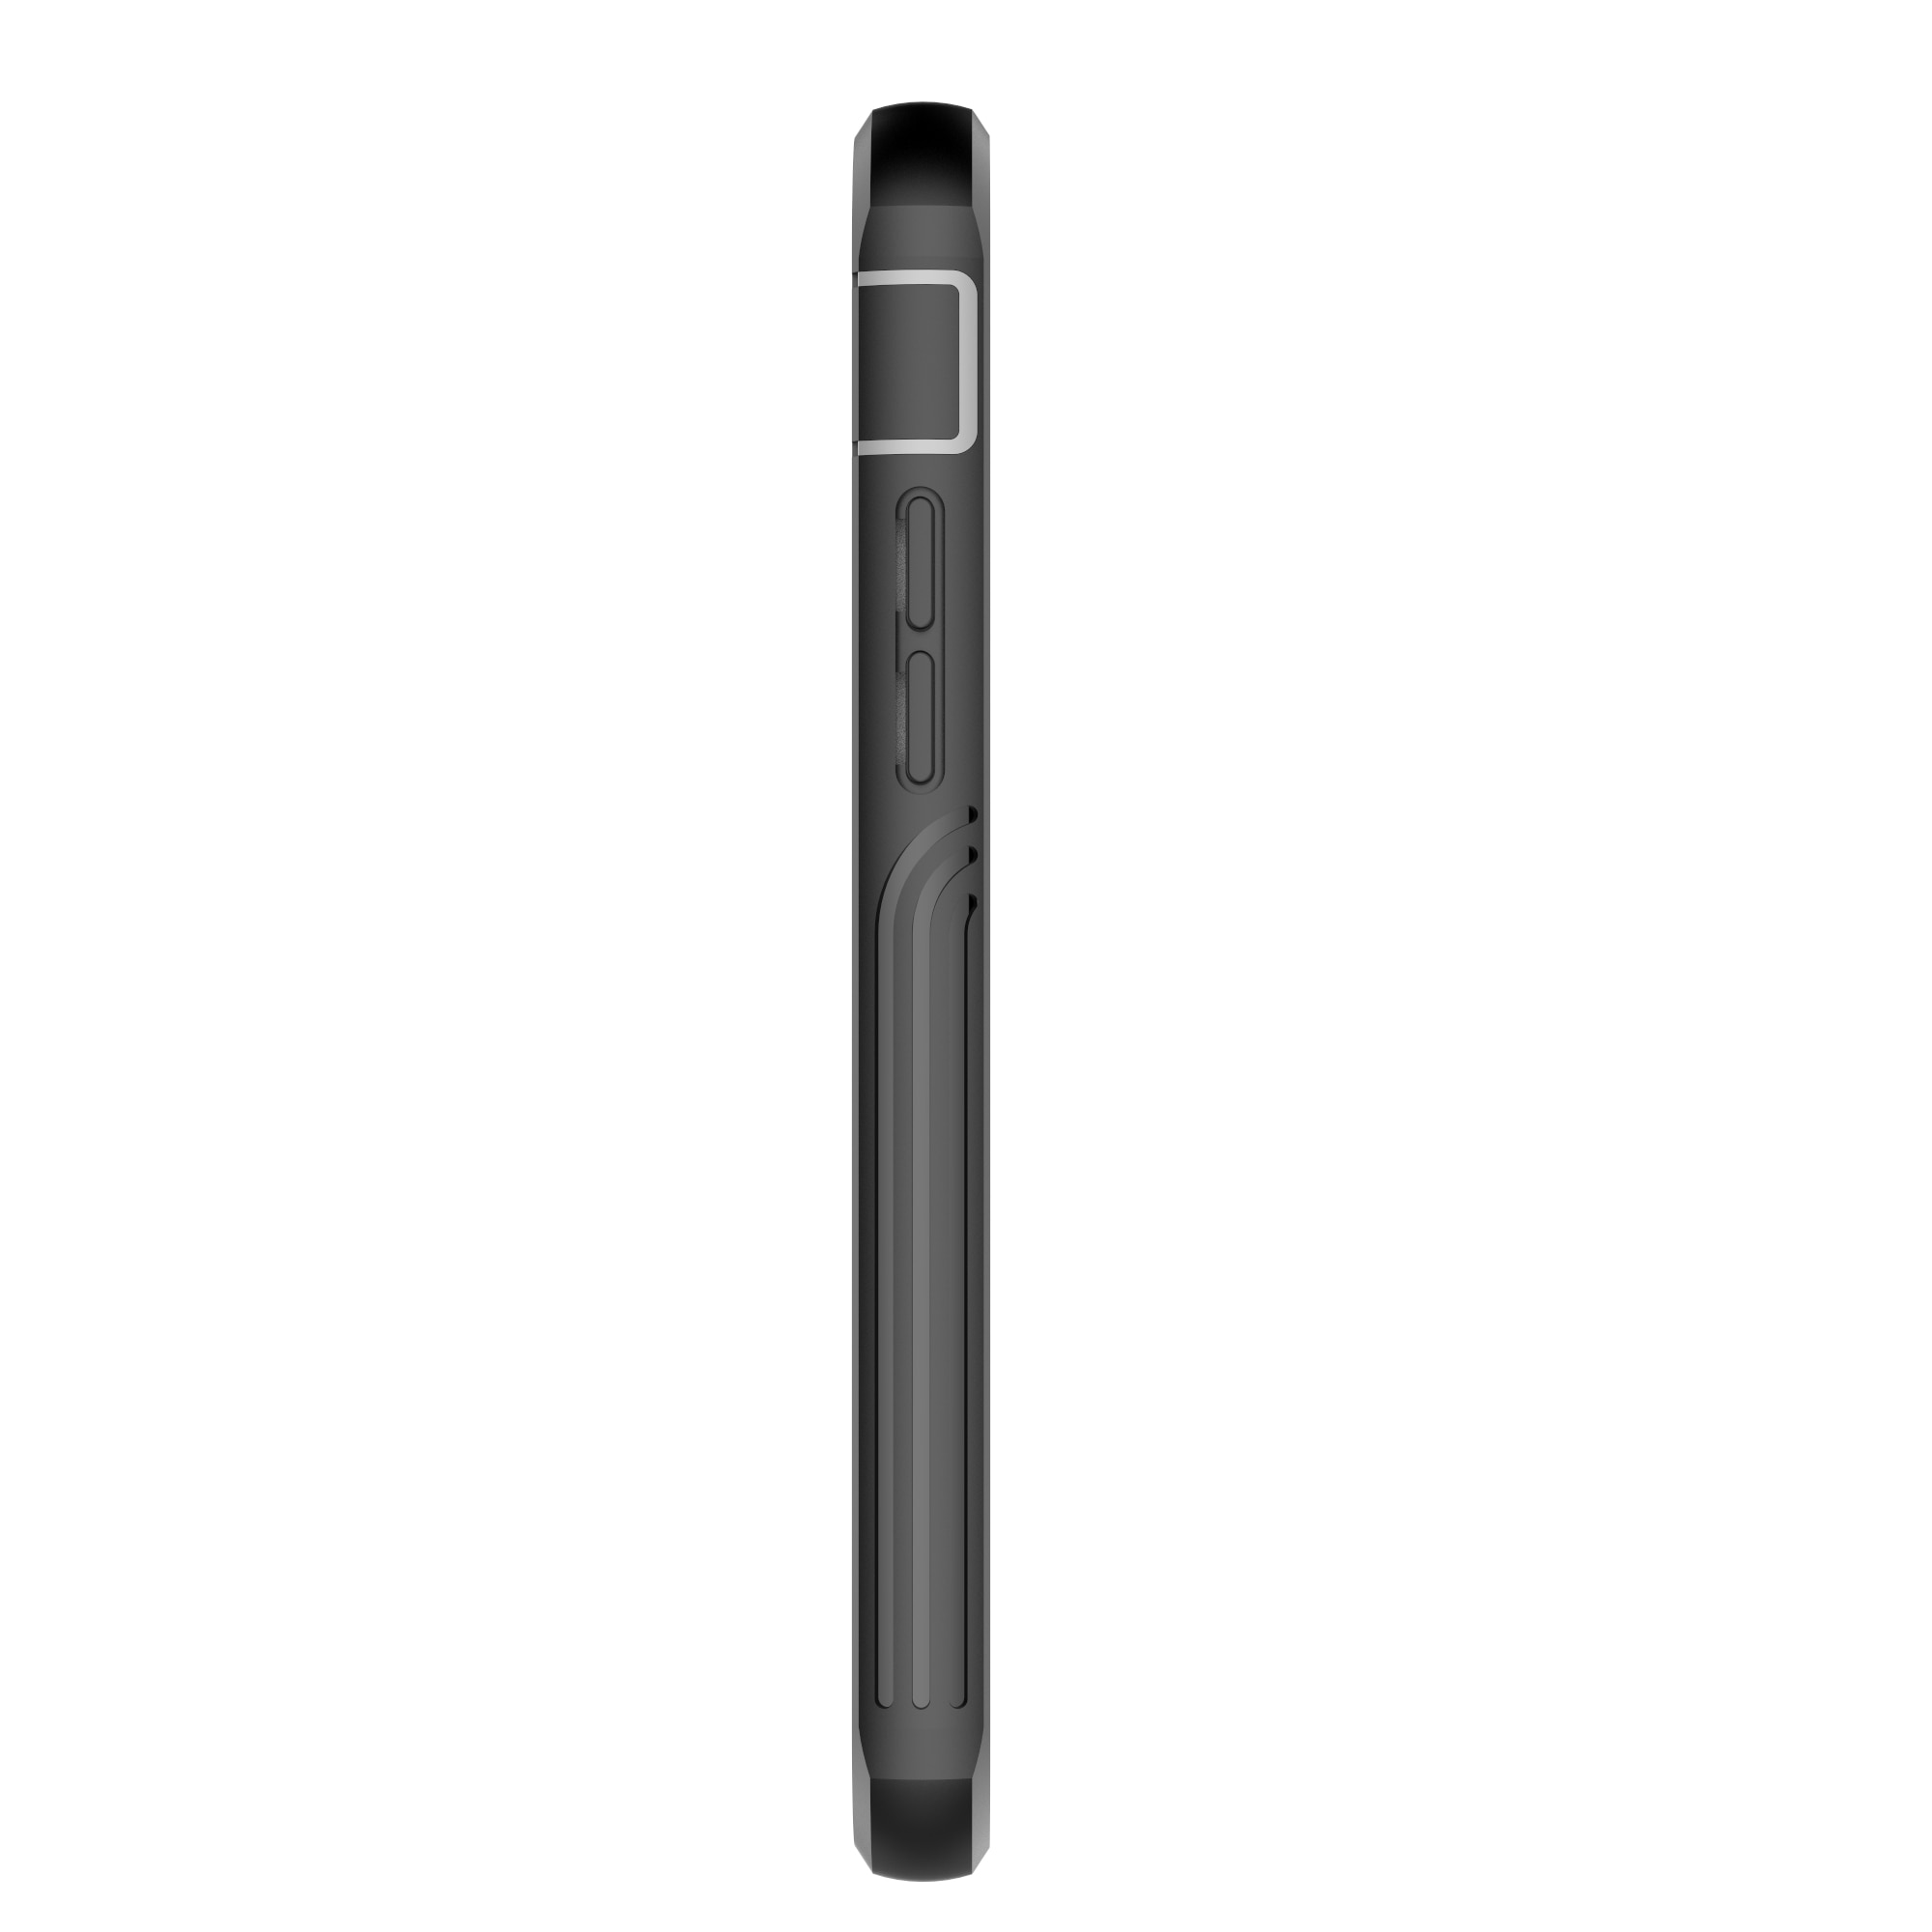 Coque Premium Full Protection iPhone 8, noir